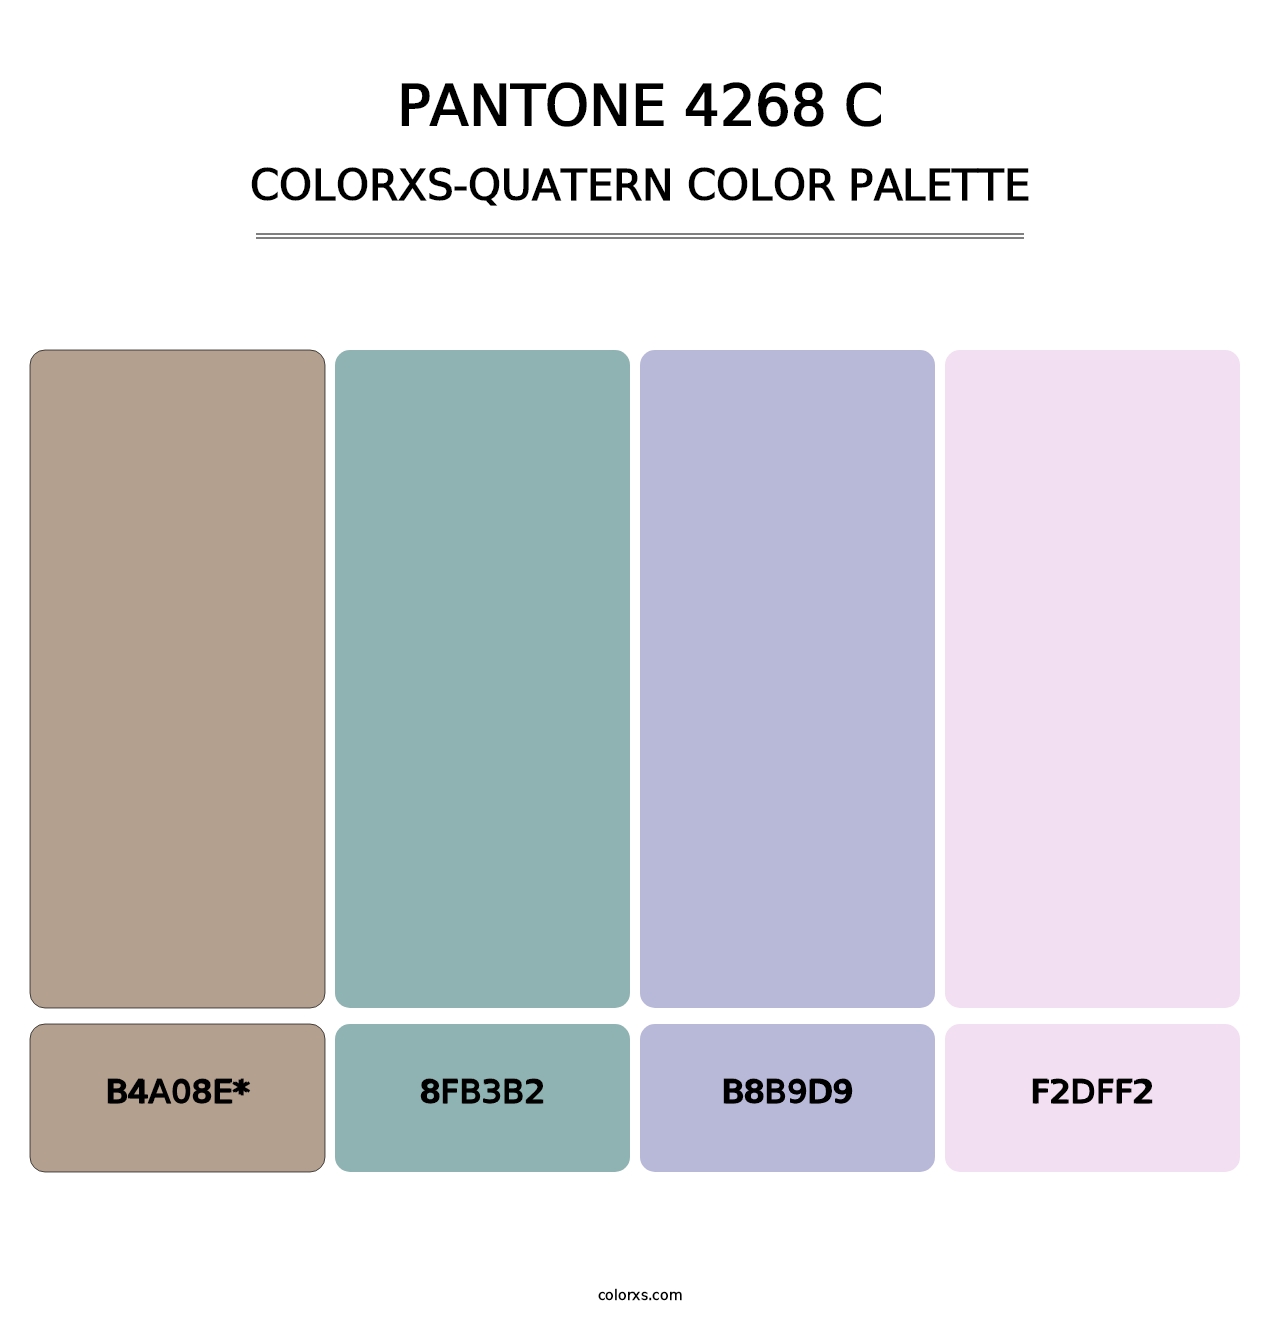 PANTONE 4268 C - Colorxs Quatern Palette